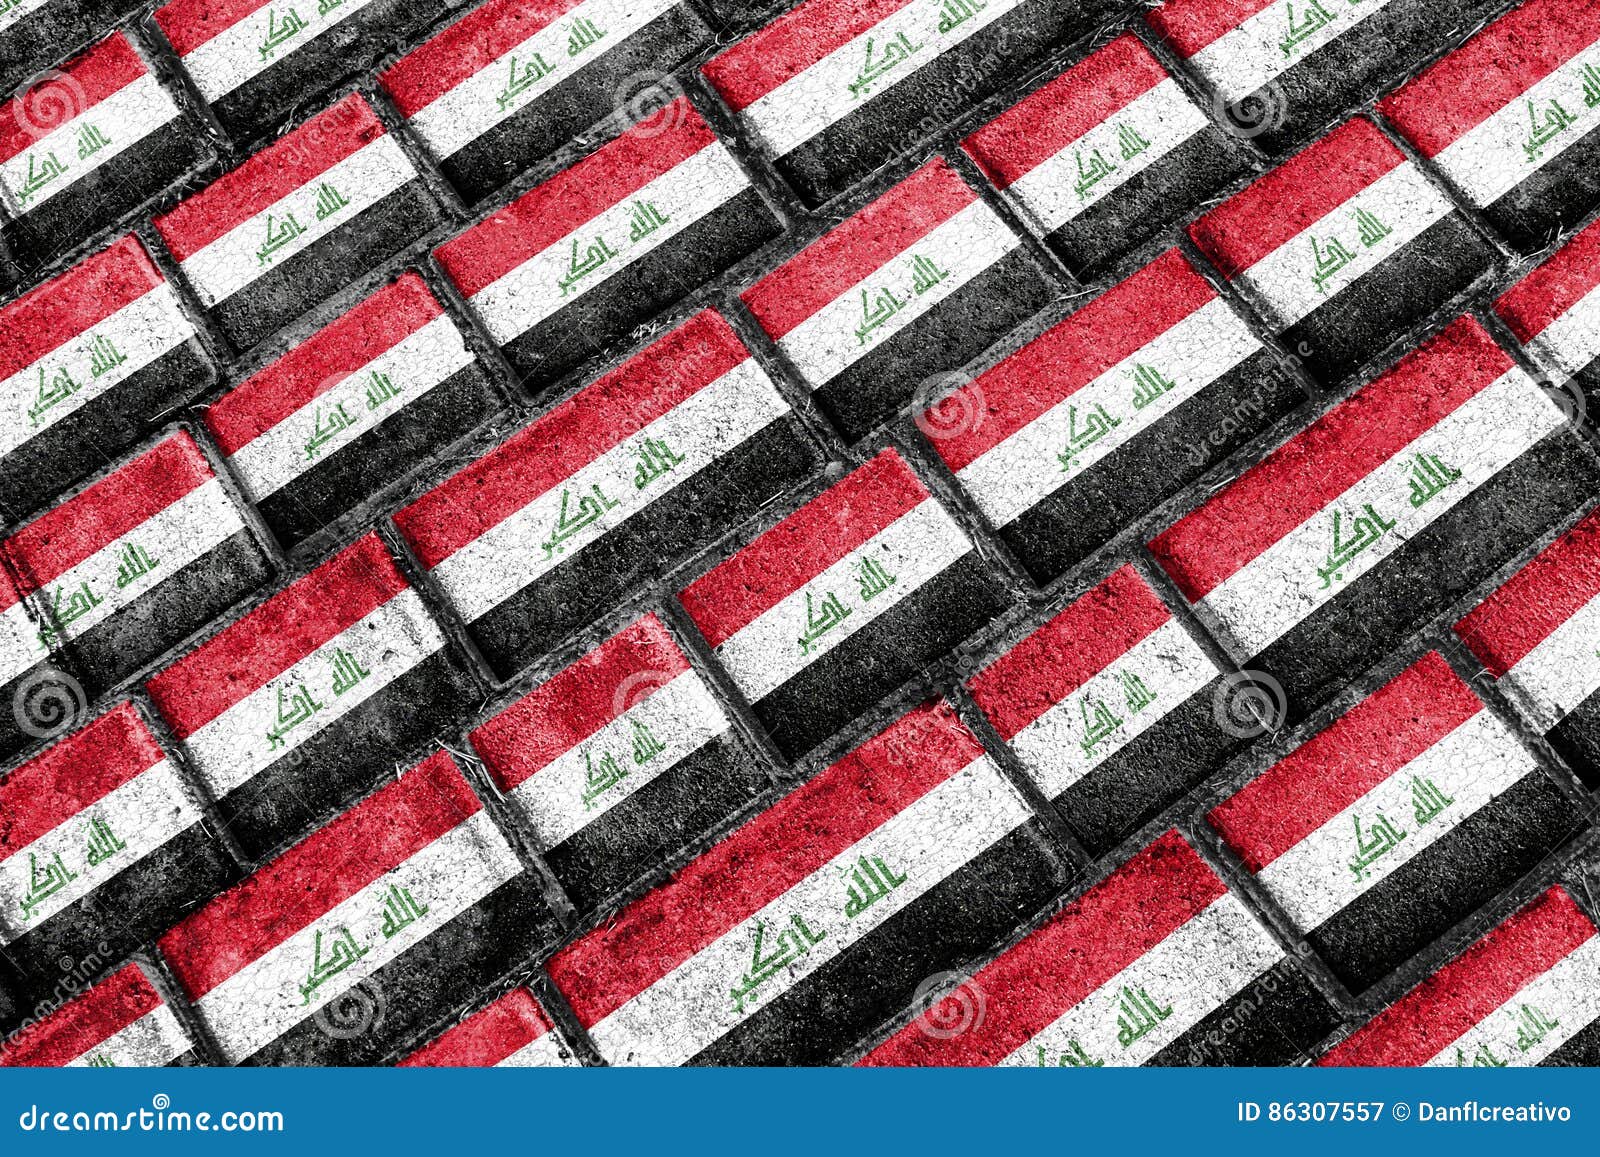 irak flag urban grunge pattern